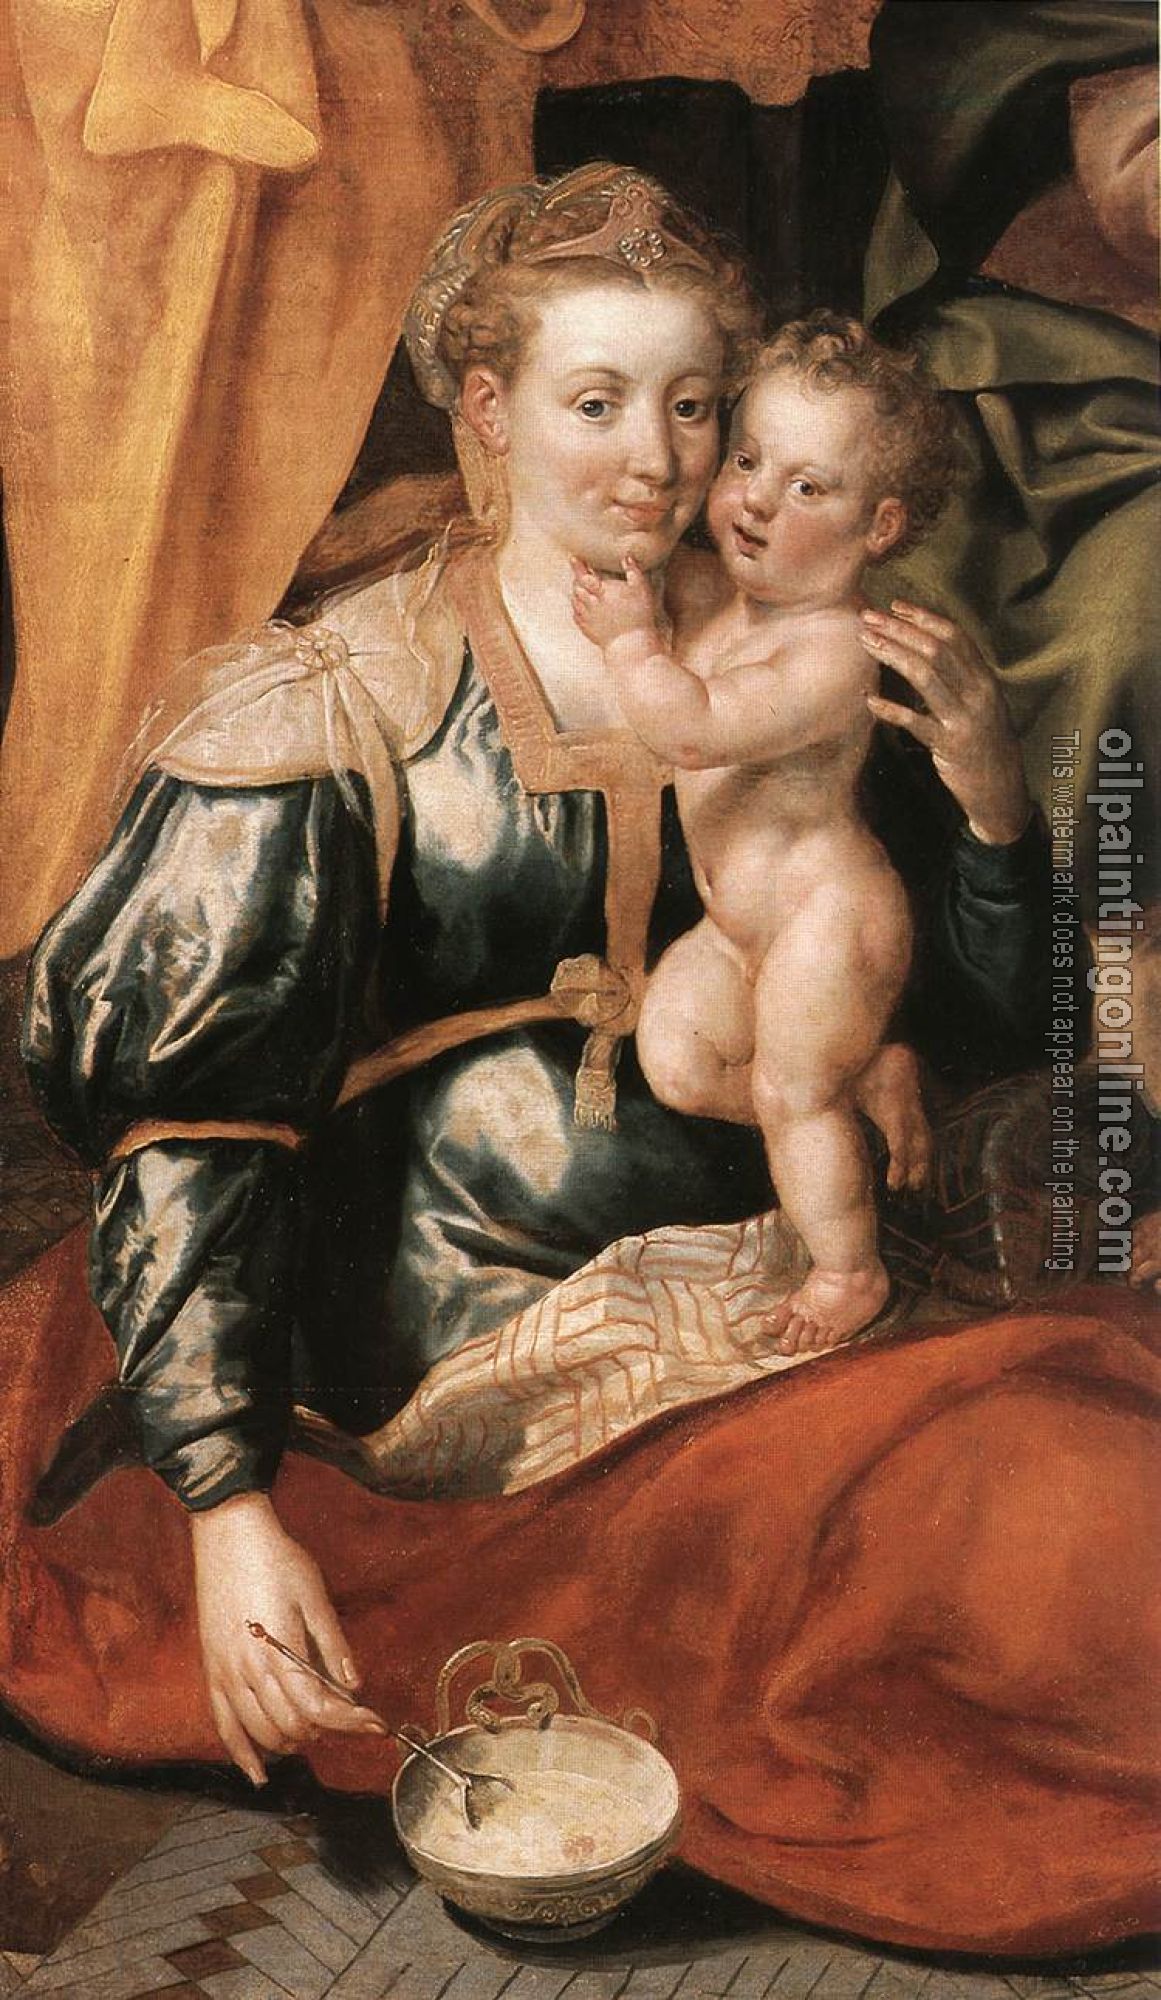 Vos, Marten de - The Family of St Anne, detail